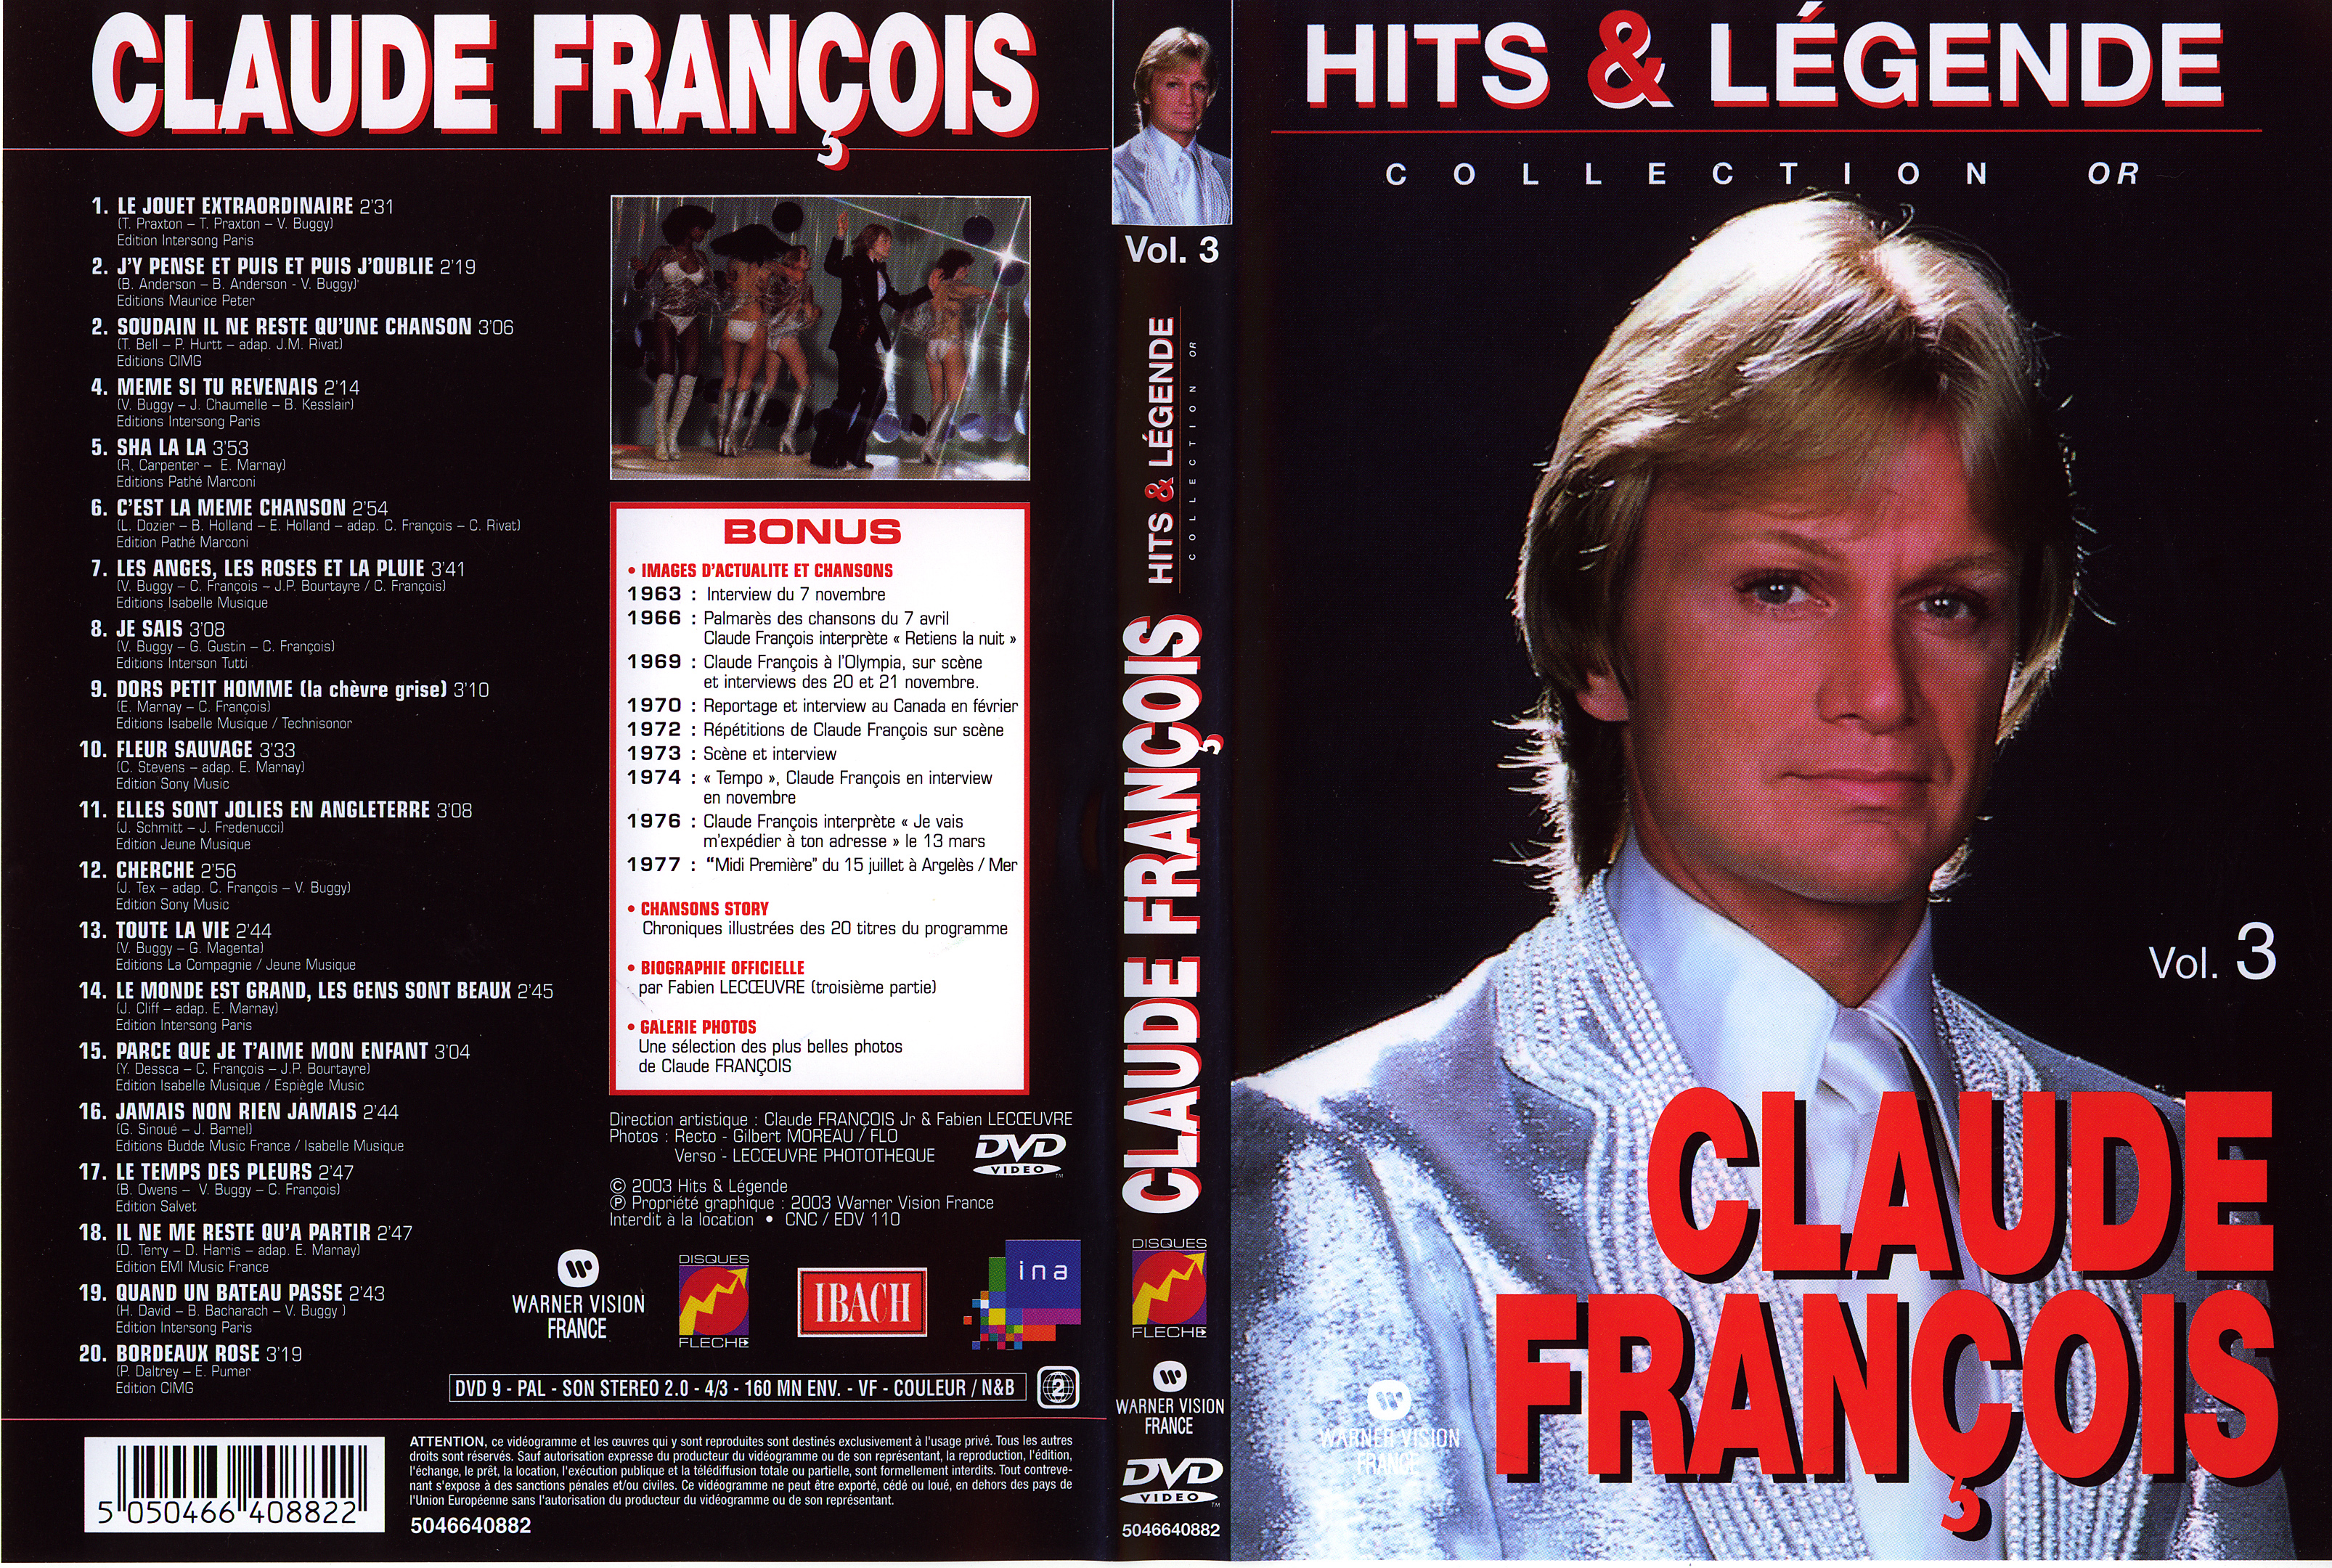 Jaquette DVD Claude Francois Hits et Legendes vol 3